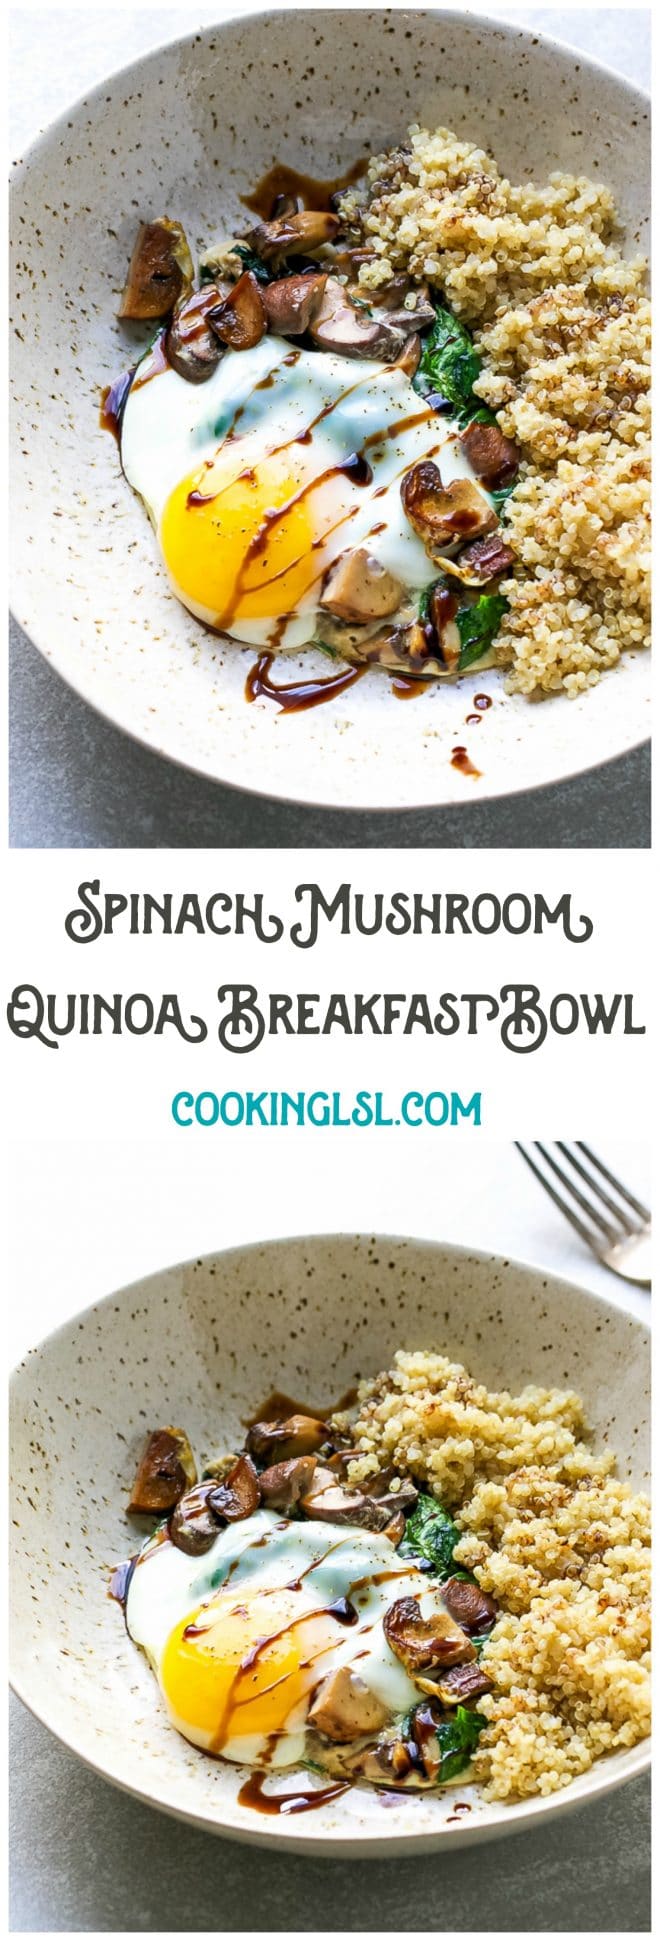 Spinach mushroom quinoa breakfast bowl recipe